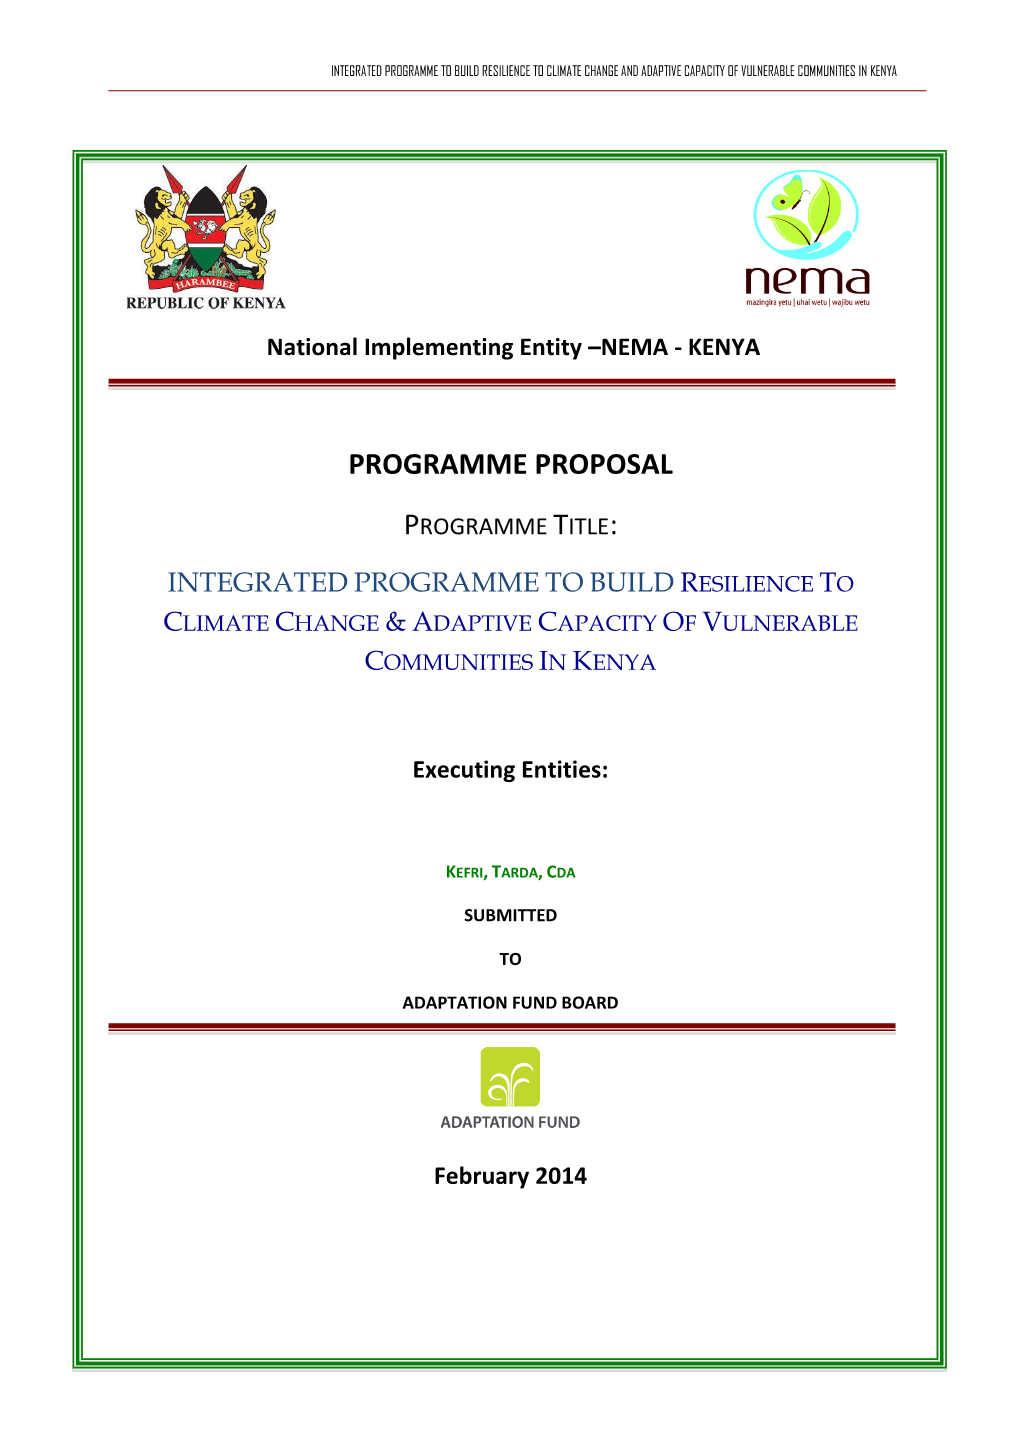 Kenya Programme Proposal